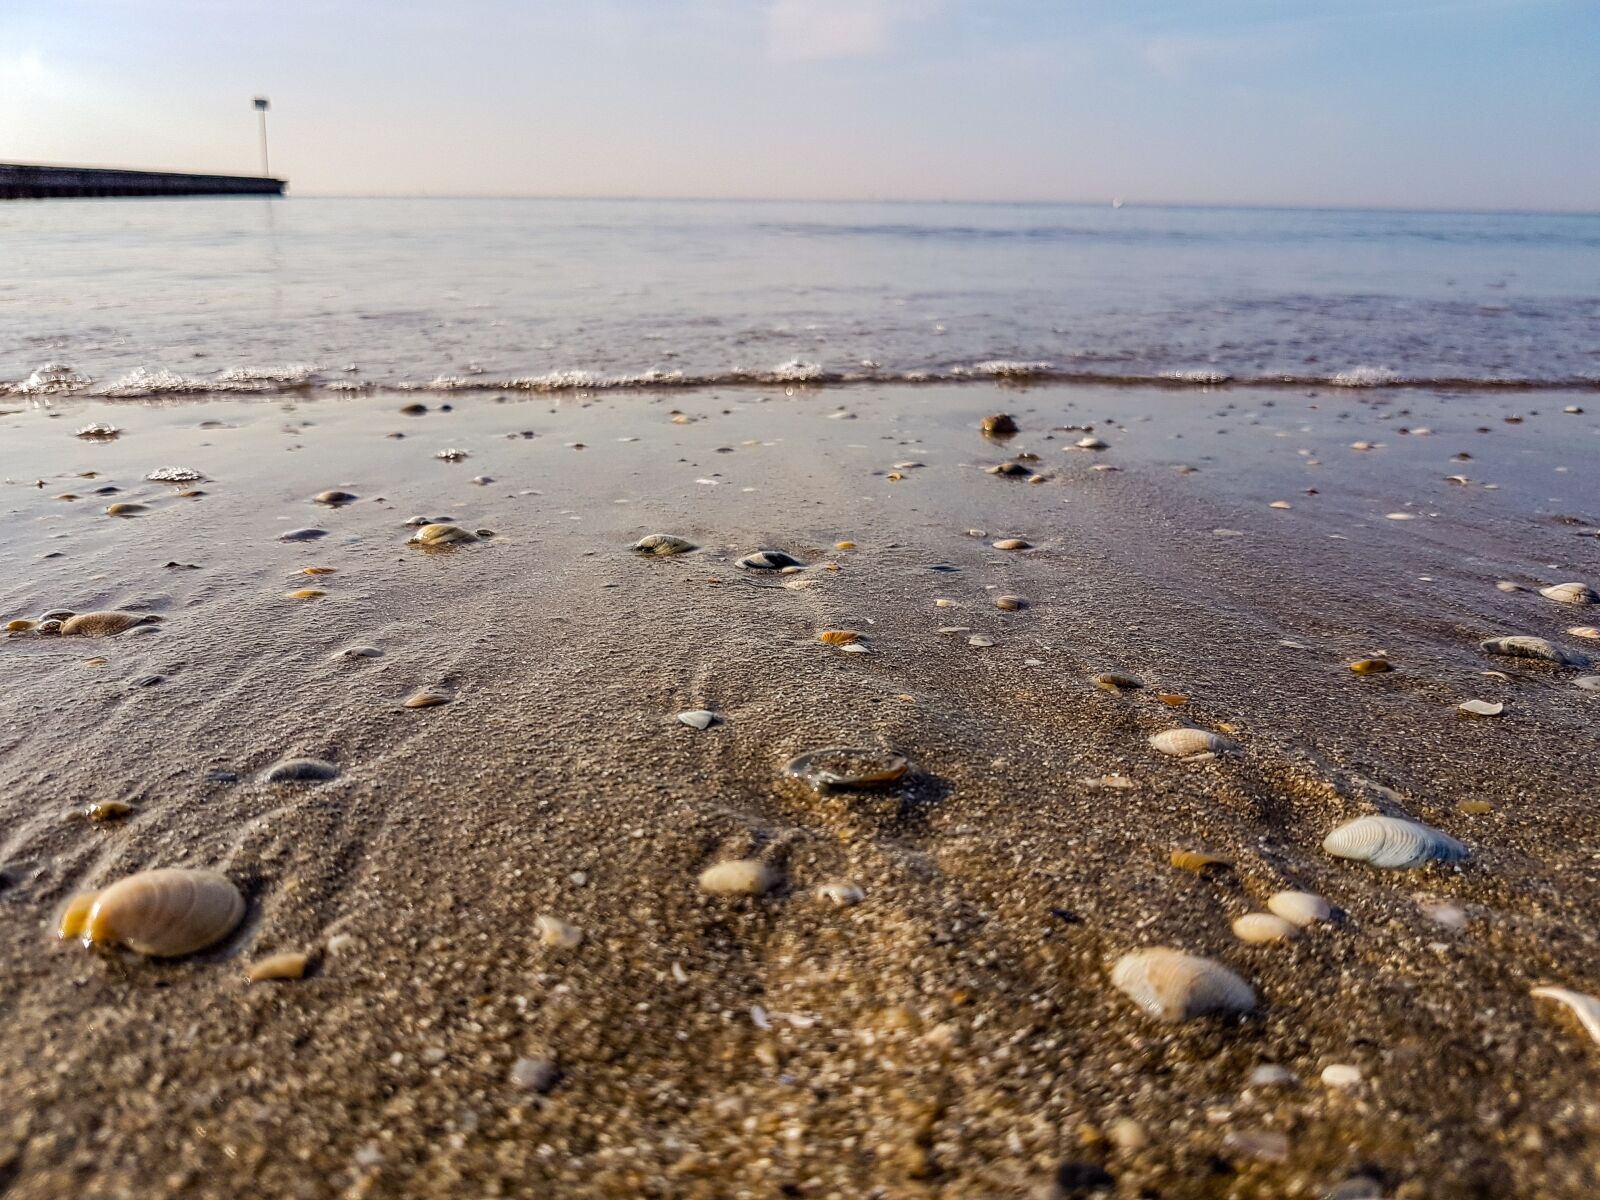 Samsung Galaxy S7 + Samsung Galaxy S7 Rear Camera sample photo. Sea, sand, sun photography